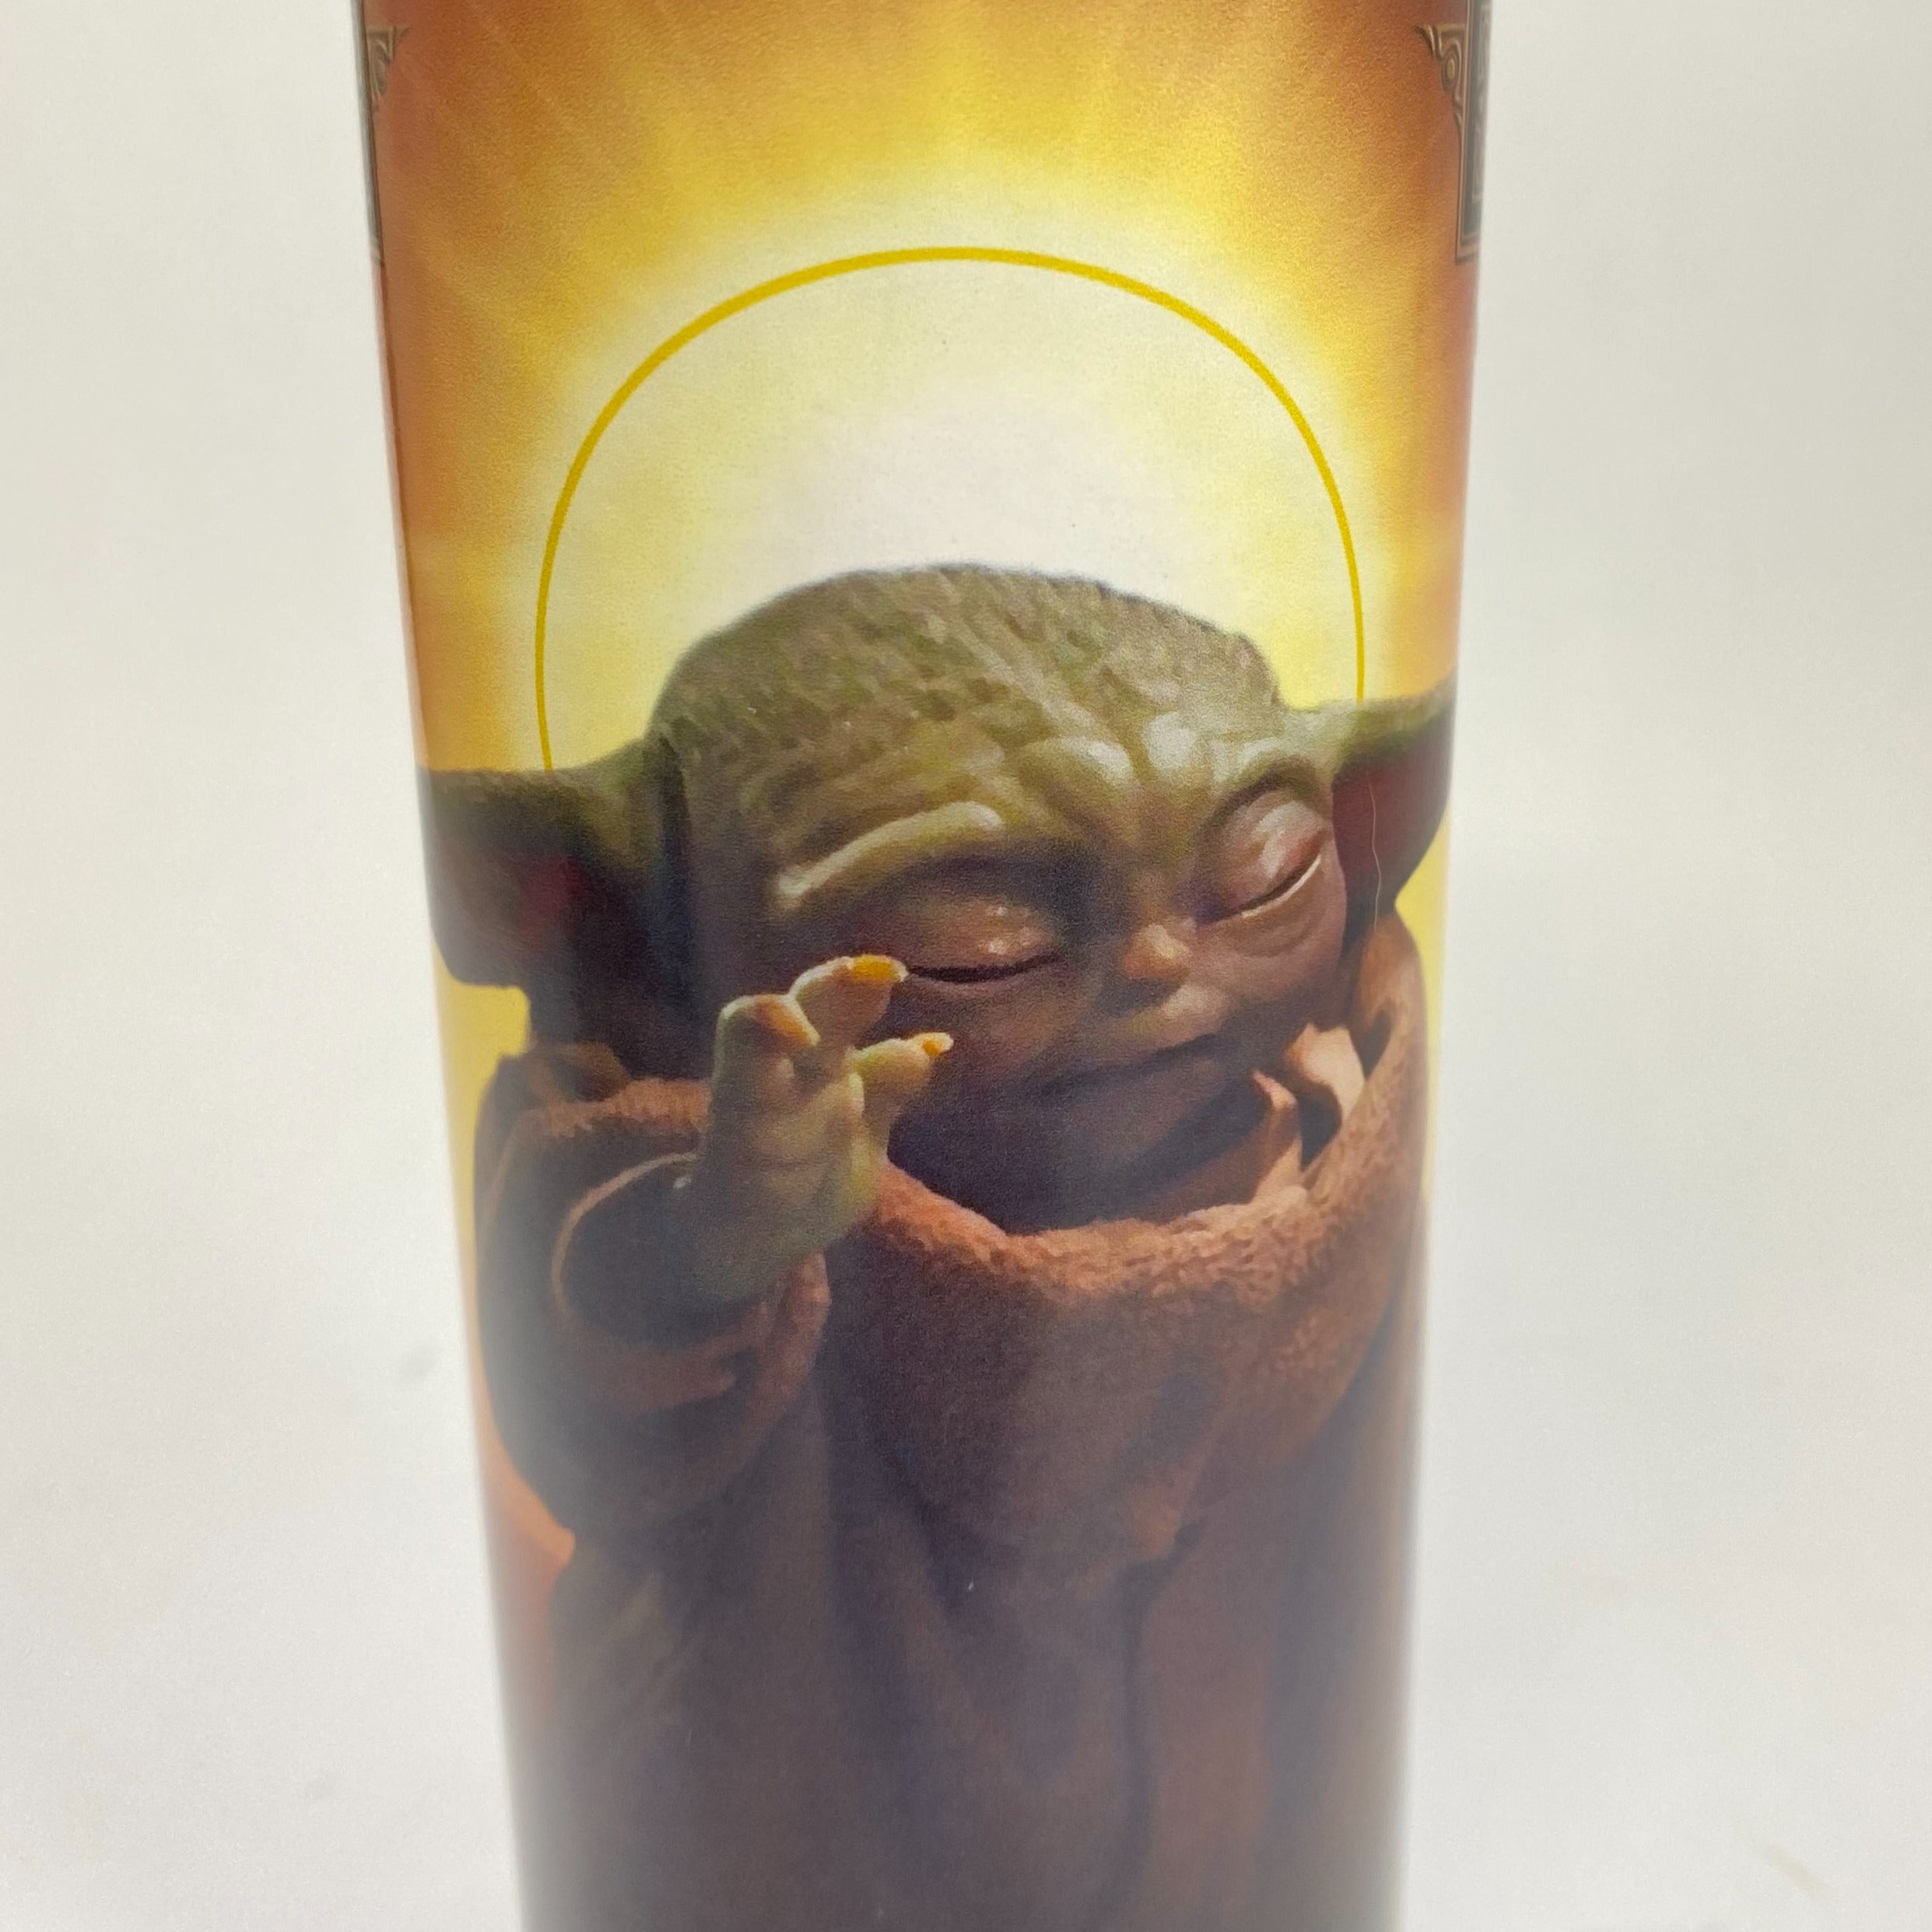 Baby Yoda / Grogu Inspired Candle